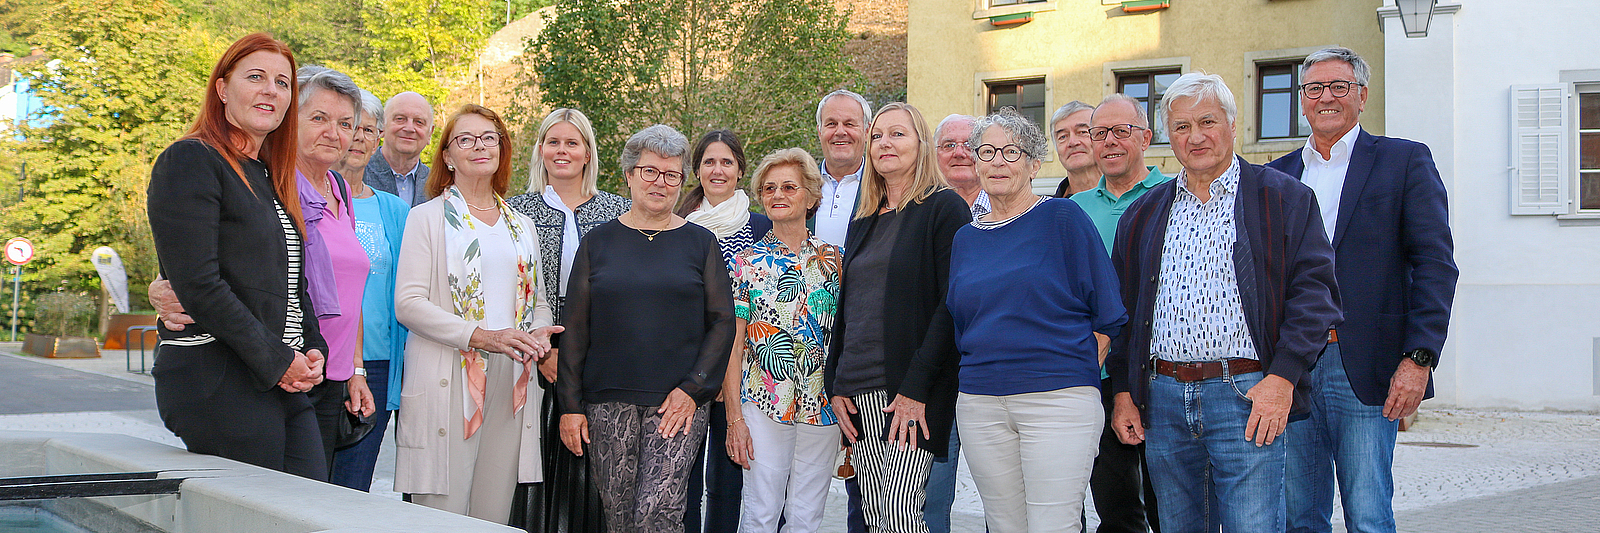 Die Mitglieder des Seniorenbeirats stehen vor dem Brunnen in der Neustadt.